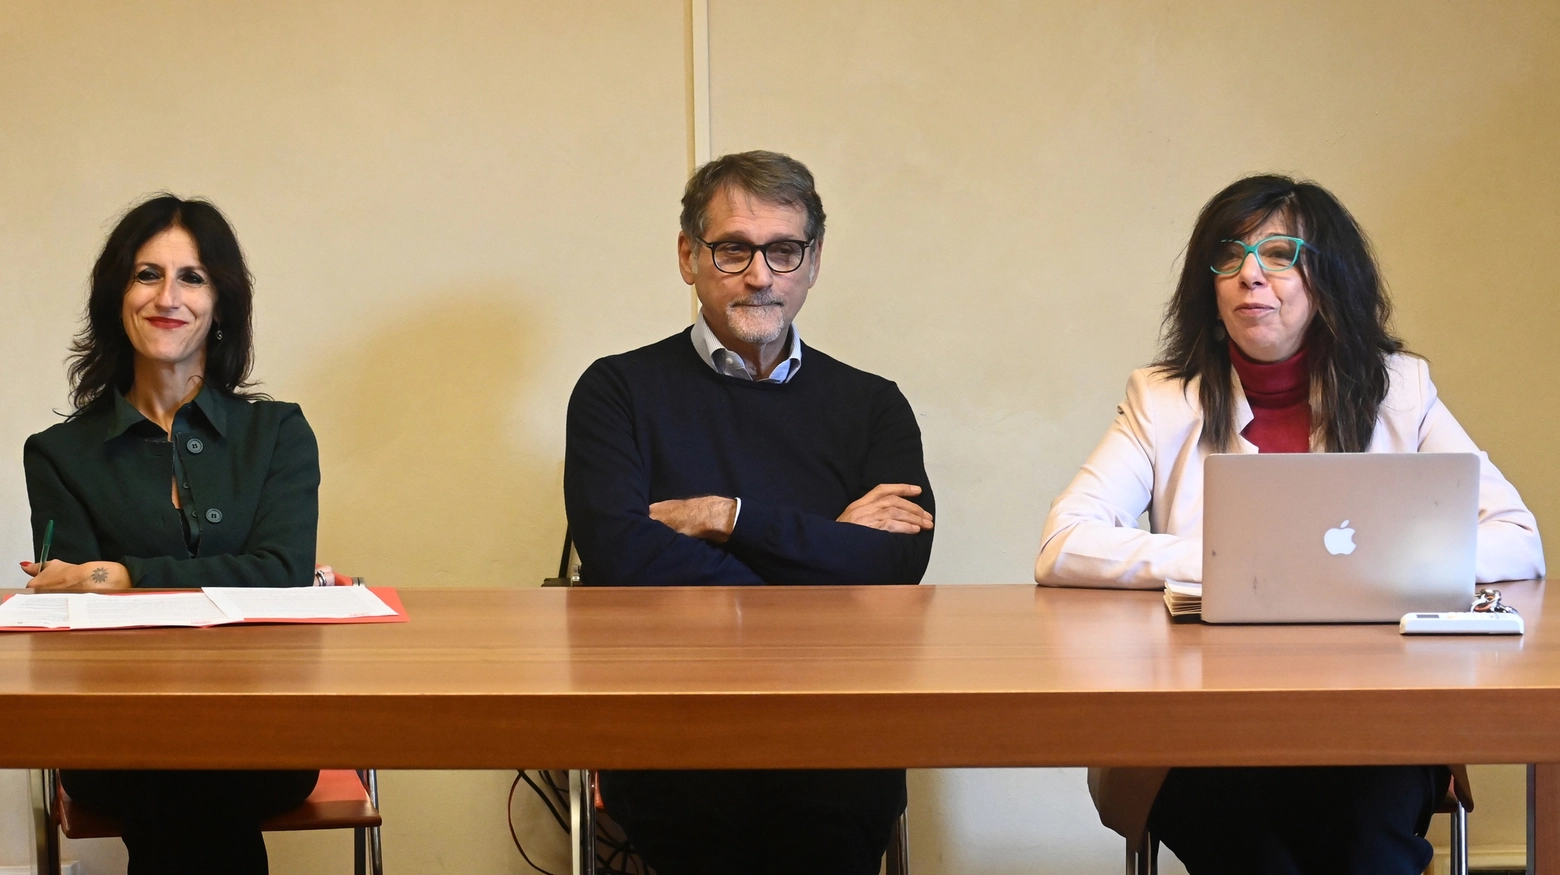 Conferenza stampa di presentazione dell'offerta formativa dell'Istituto storico Parri. Partecipano V.Merola, A.Portincasa e C.Brescianini